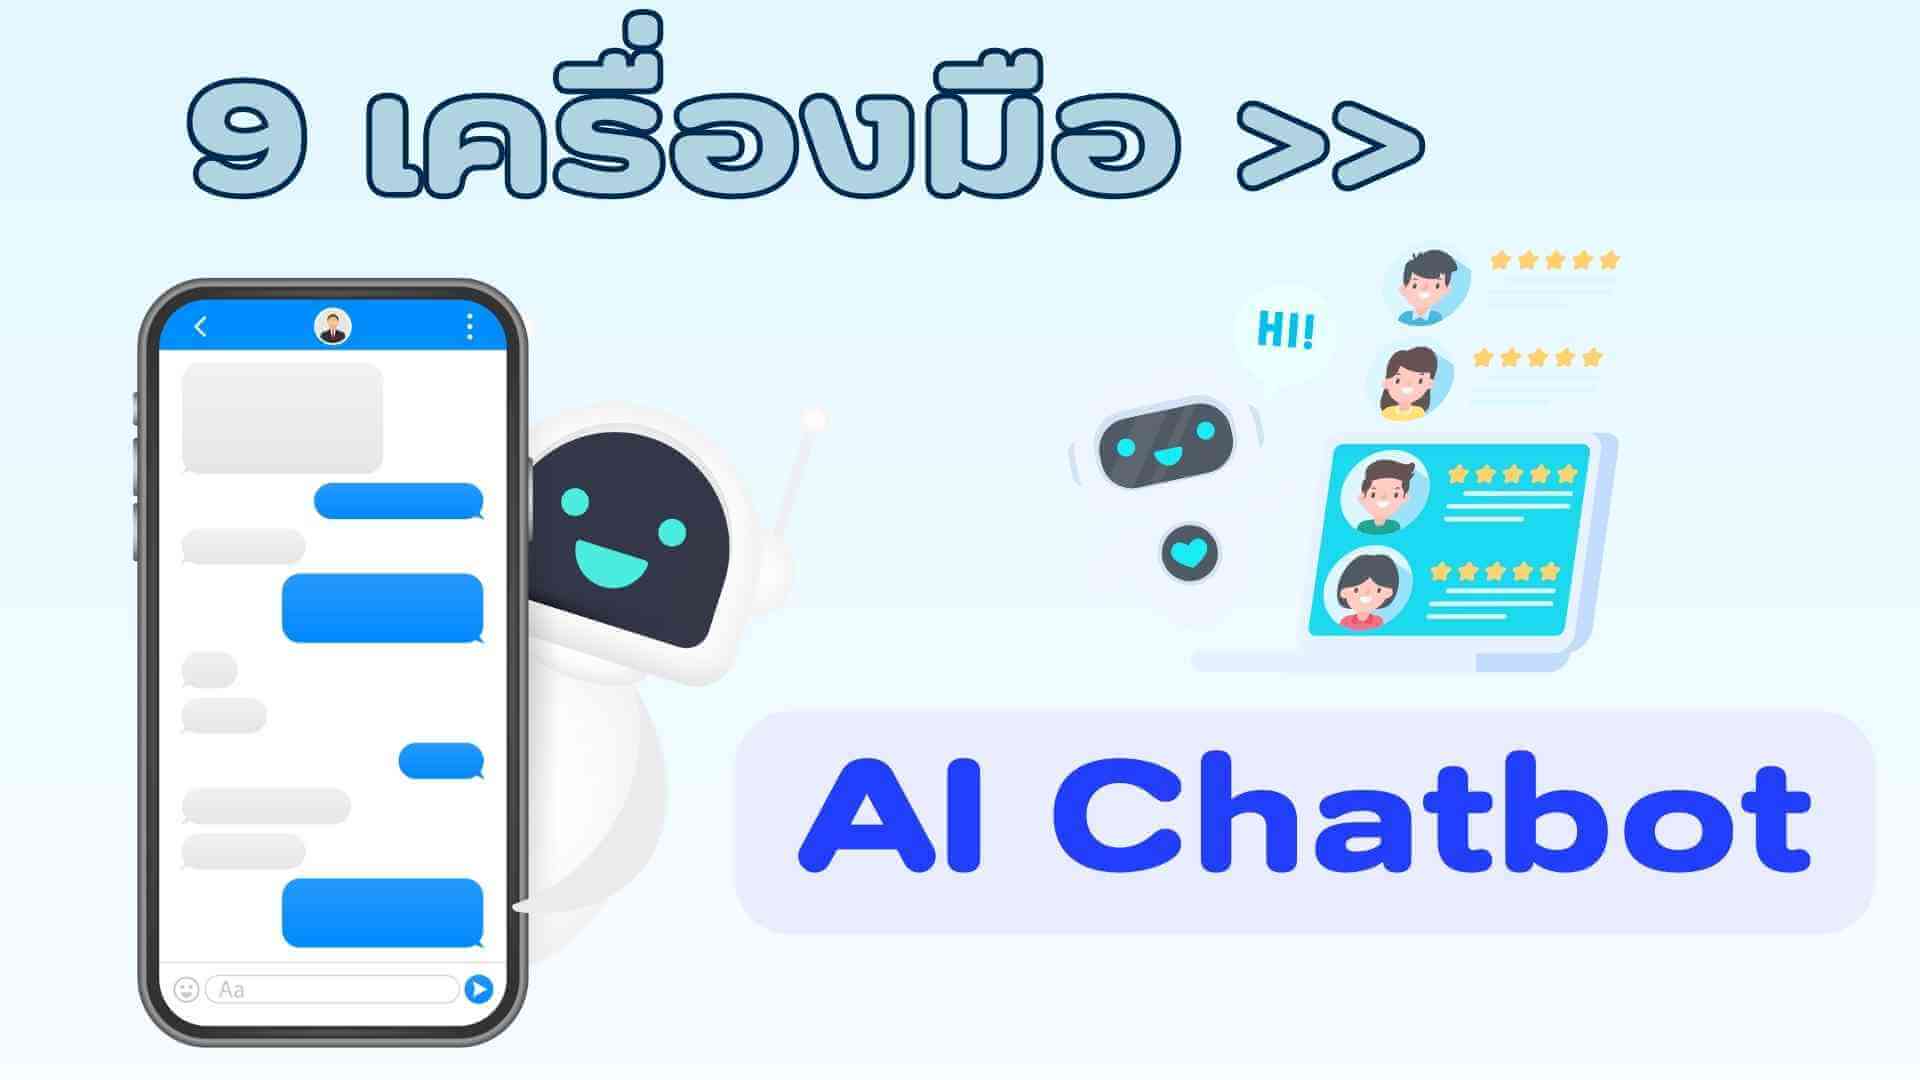 [แนะนำ] 9 เครื่องมือ AI Chatbot ที่ช่วยปรับเปลี่ยนวิถีชีวิตให้ดียิ่งขึ้น!